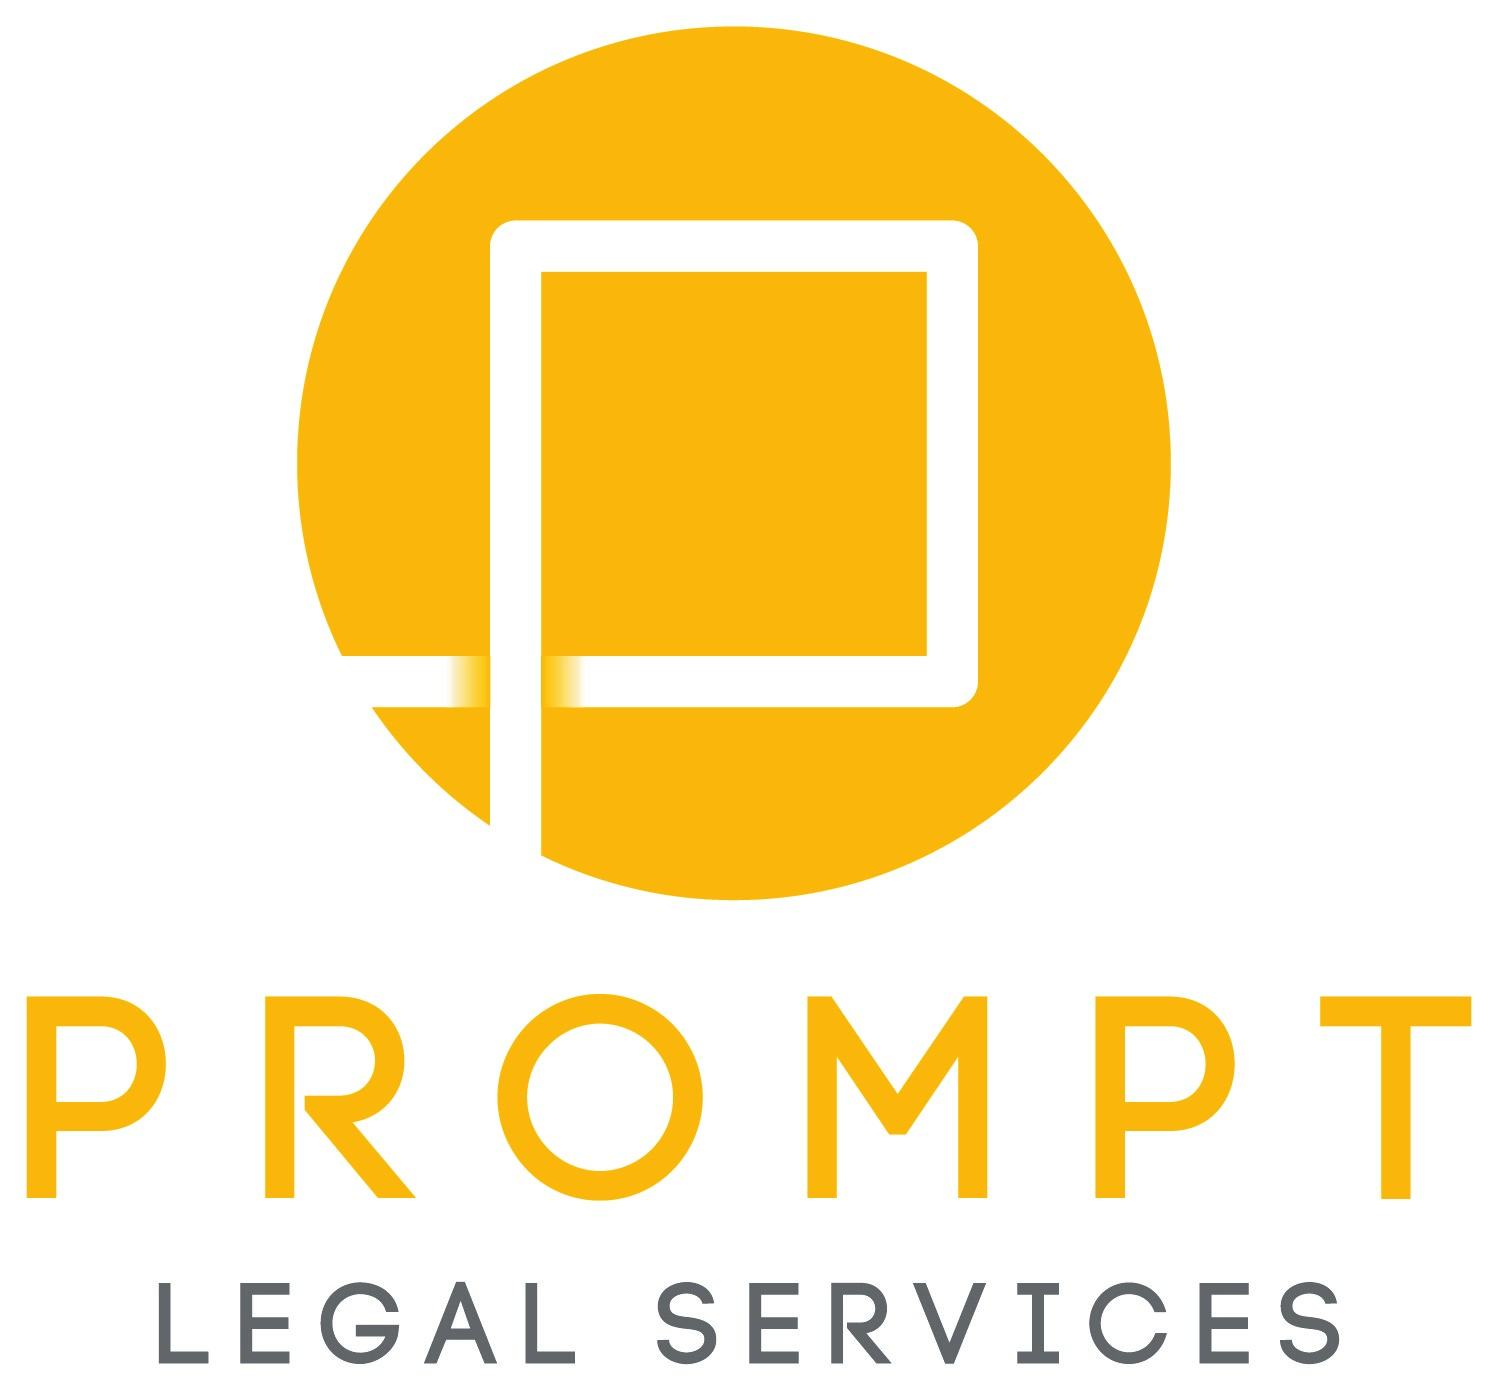 PROMPT LEGAL SERVICES CO., LTD.